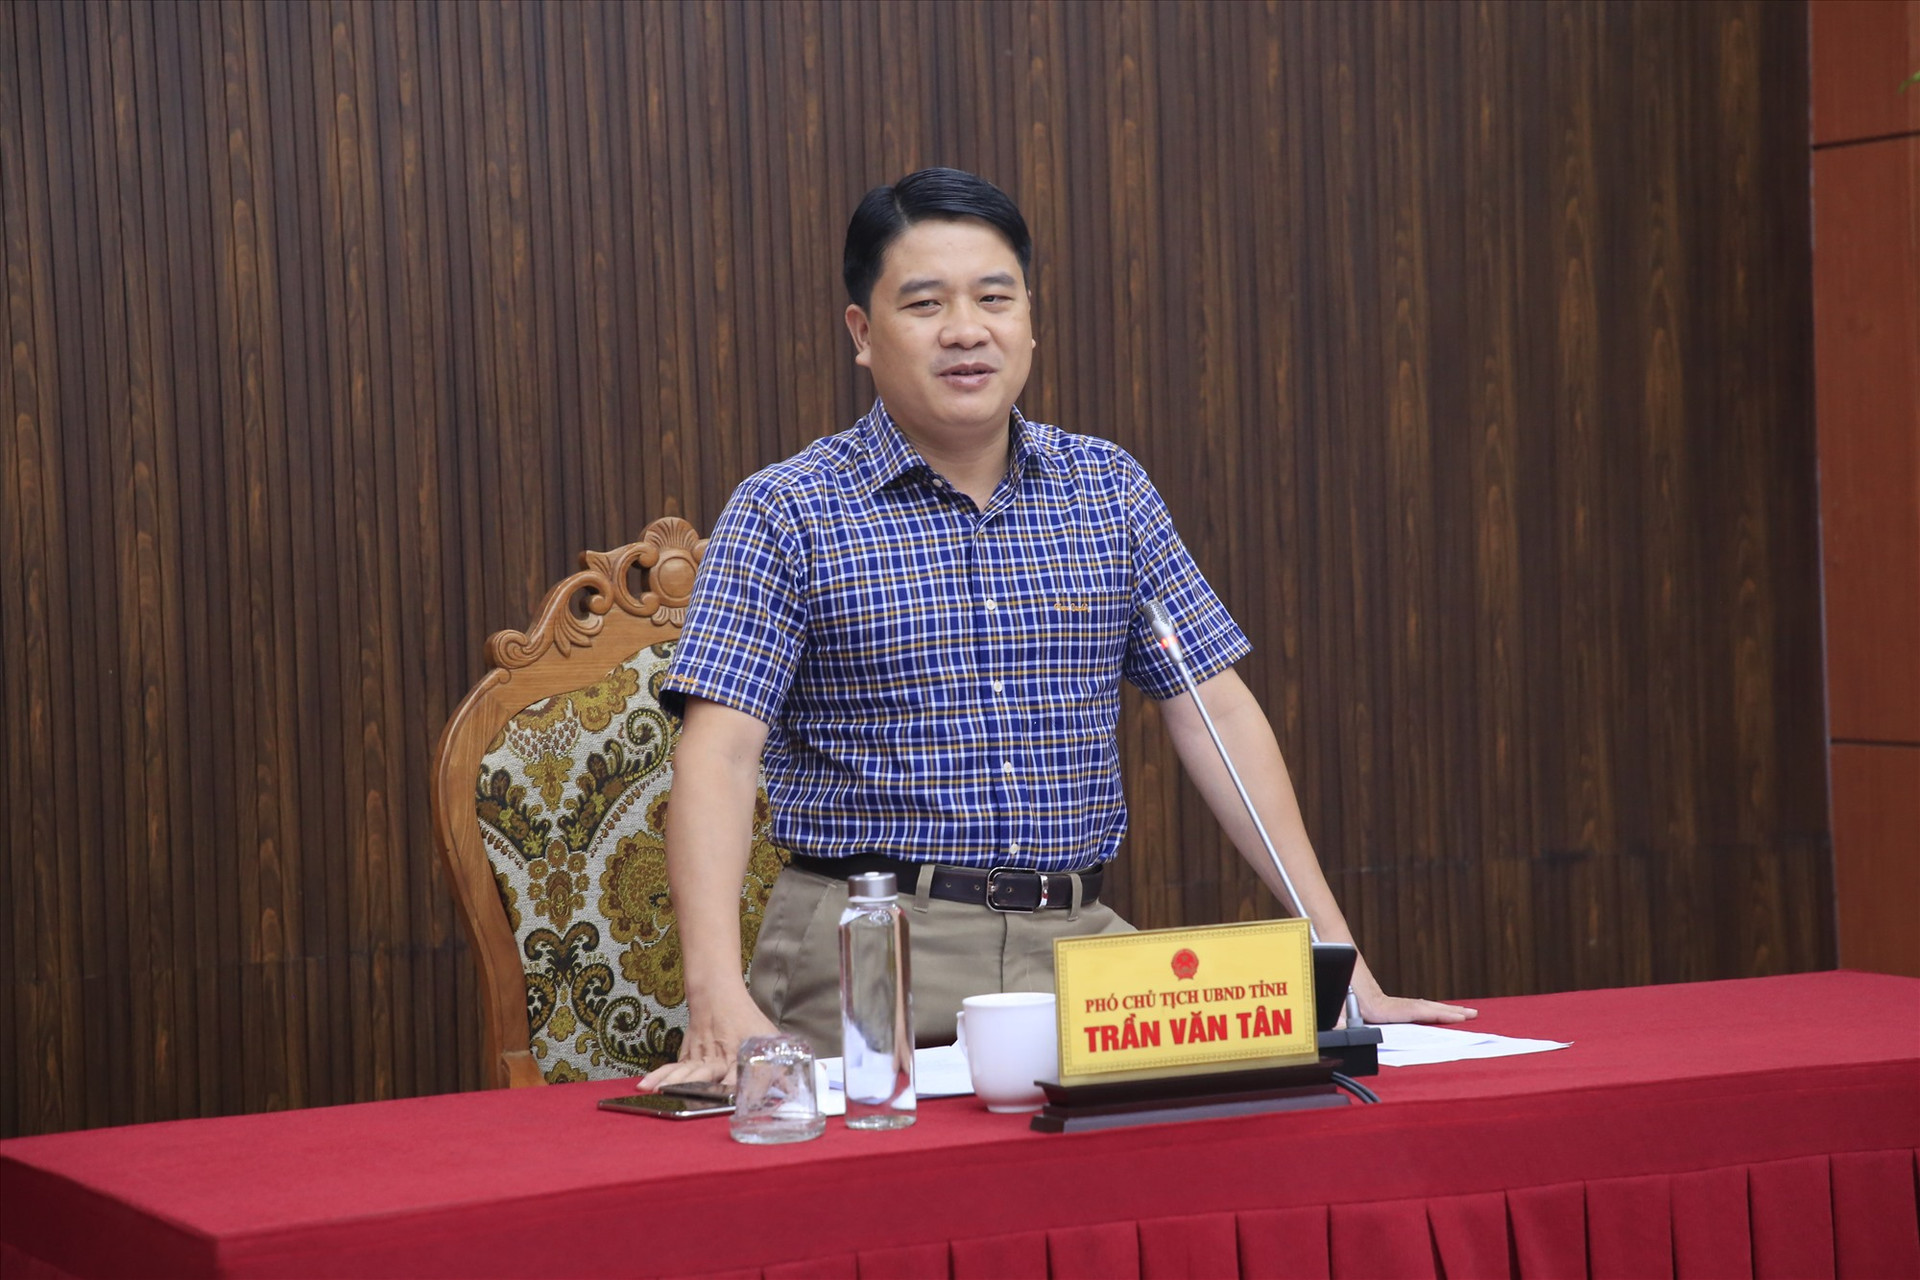 Đồng chí Trần Văn Tân đề nghị các địa phương tích cực vận dụng các quy định, theo hướng đảm bảo lợi ích của người dân, tuân thủ chặt chẽ các văn bản, quy định của Nhà nước. Ảnh: T.C